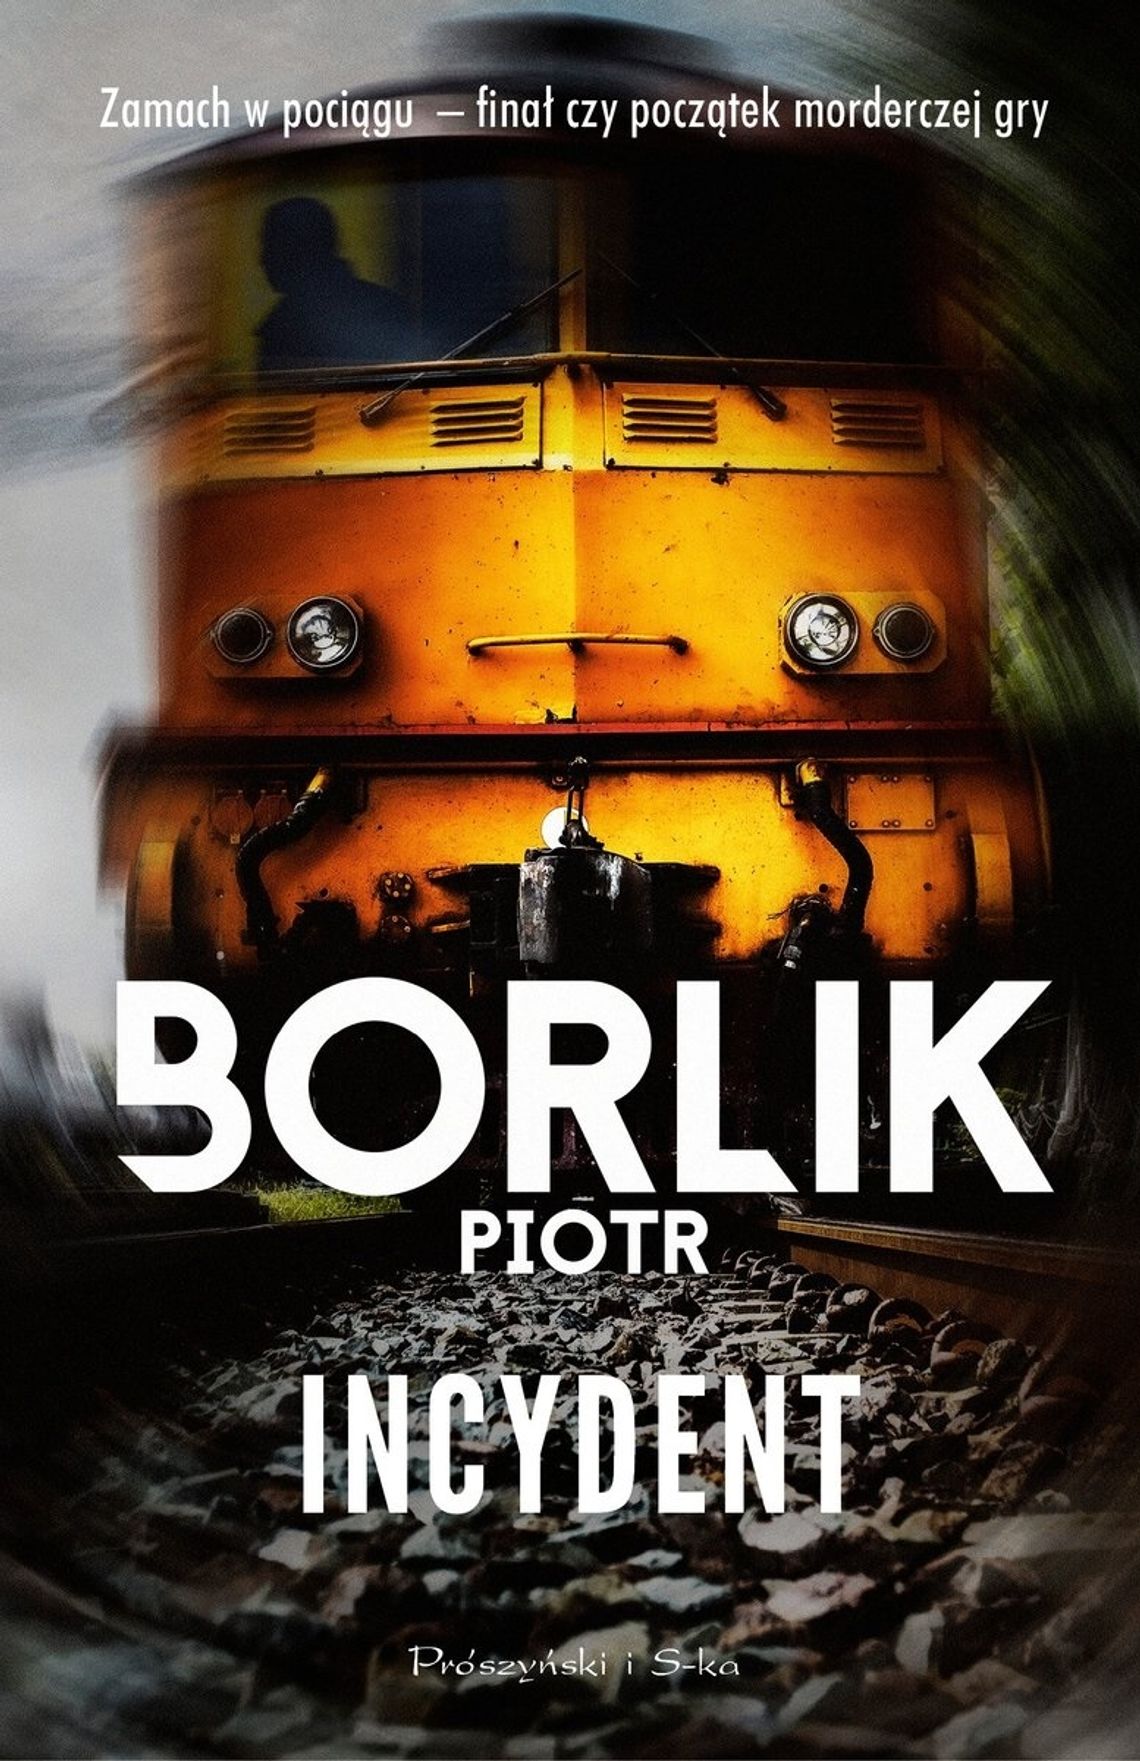 Incydent - Piotr Borlik Wydawnictwo Prószyński i S-ka